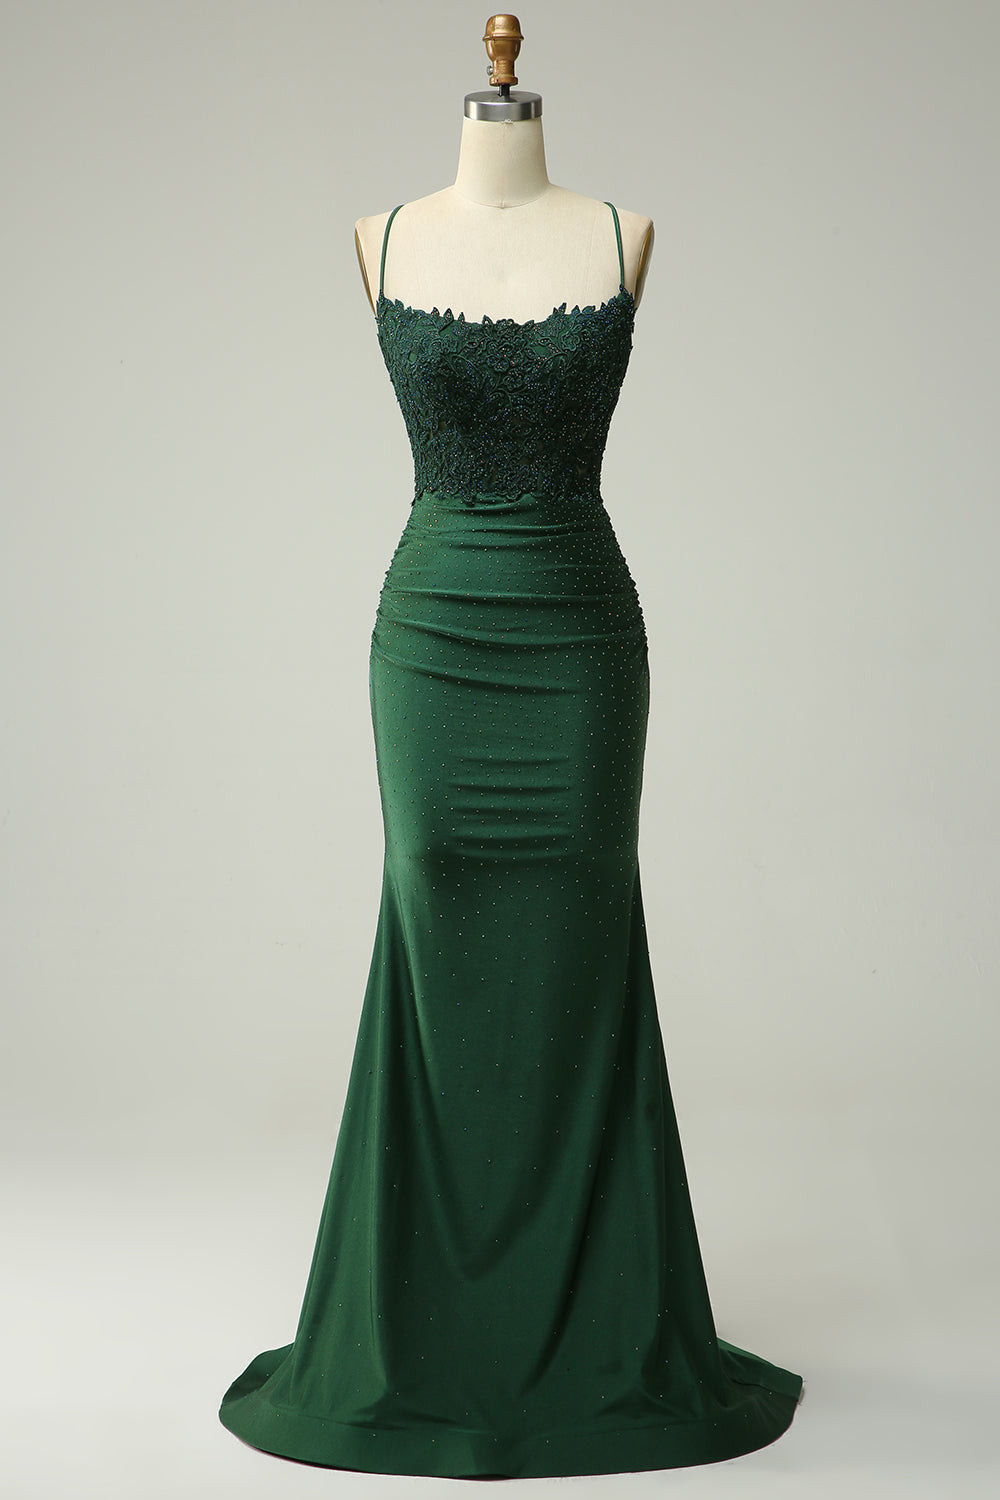 green halter dress